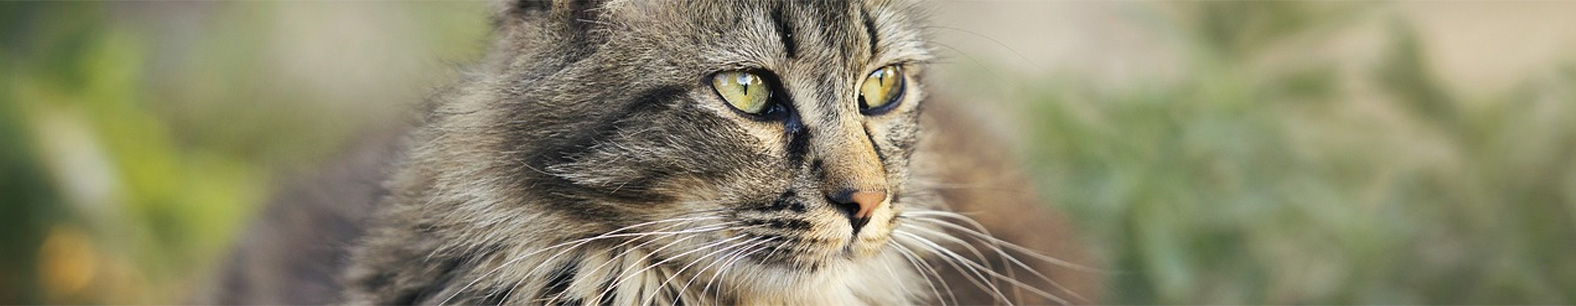 Koty i ich jedwabiste futerko:  Sekrety pielęgnacji sierści mruczków